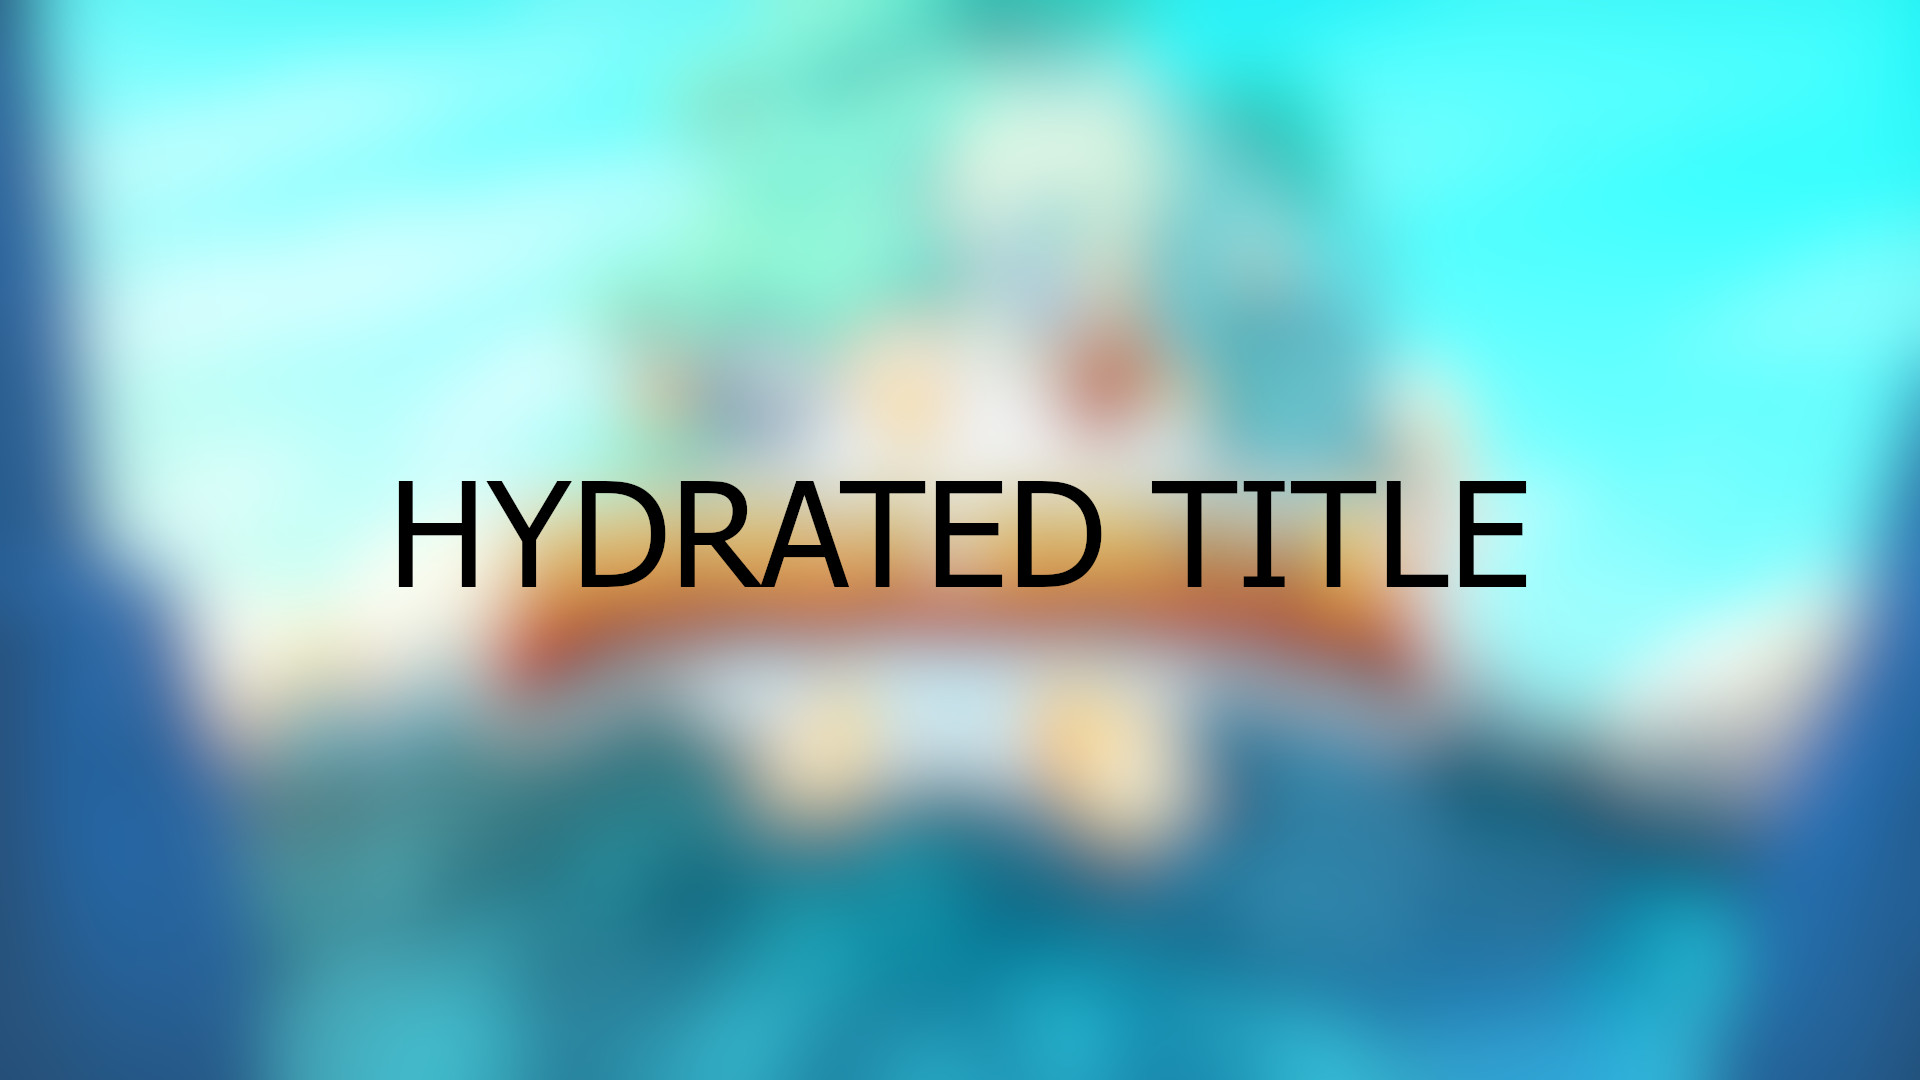 Brawlhalla - Hydrated Title DLC CD Key, $0.29